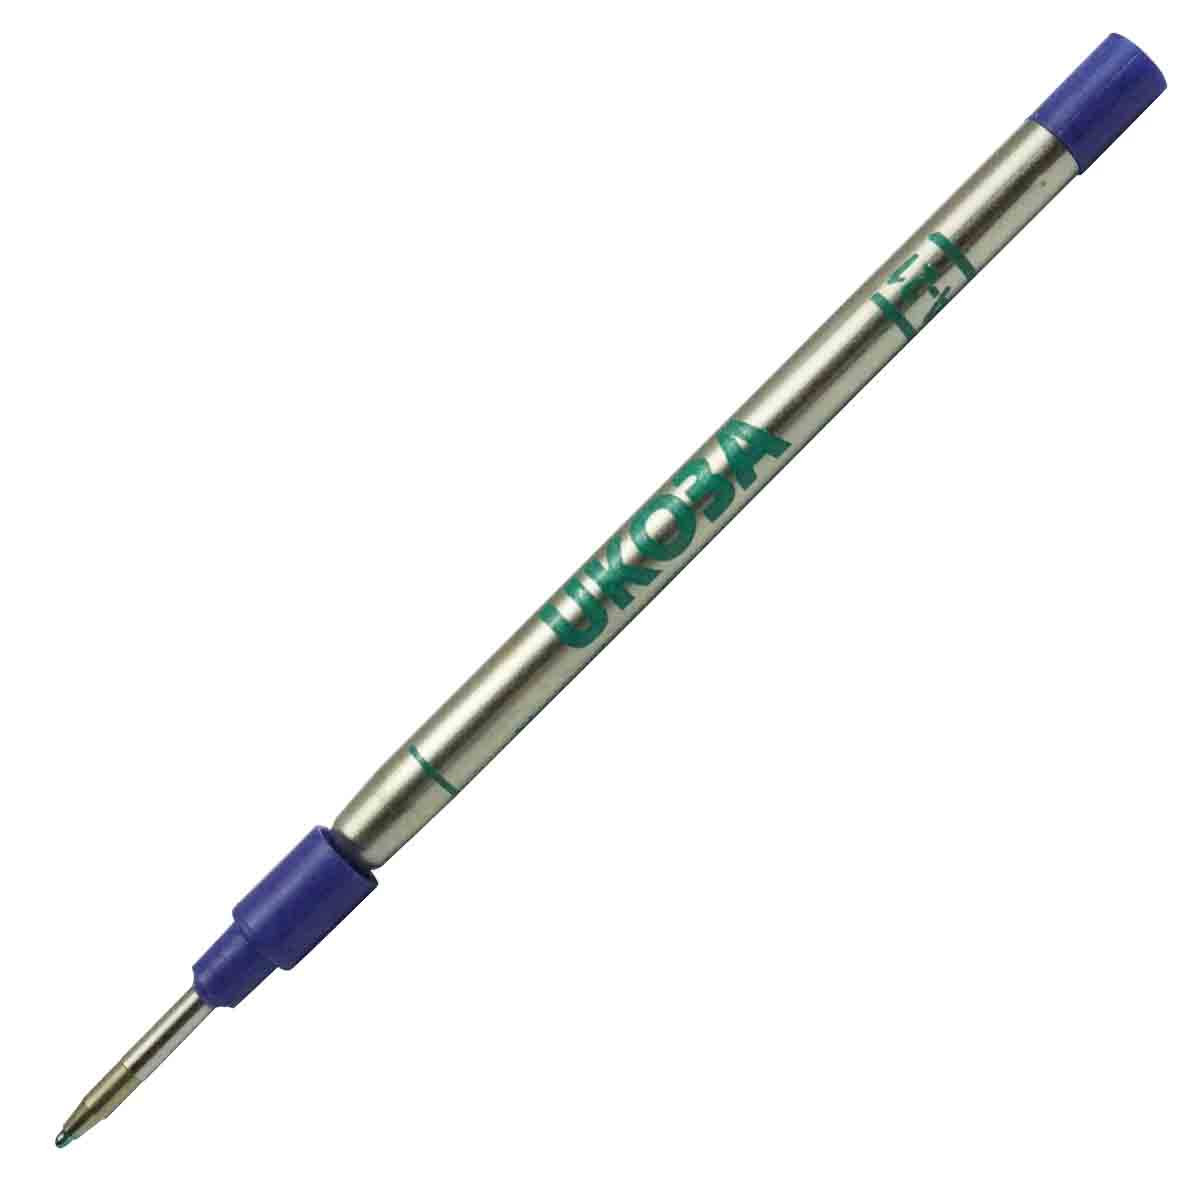 Ukoba 0.7mm Green Color Ball Pen Refill for Roller Ball Pens Model 71050